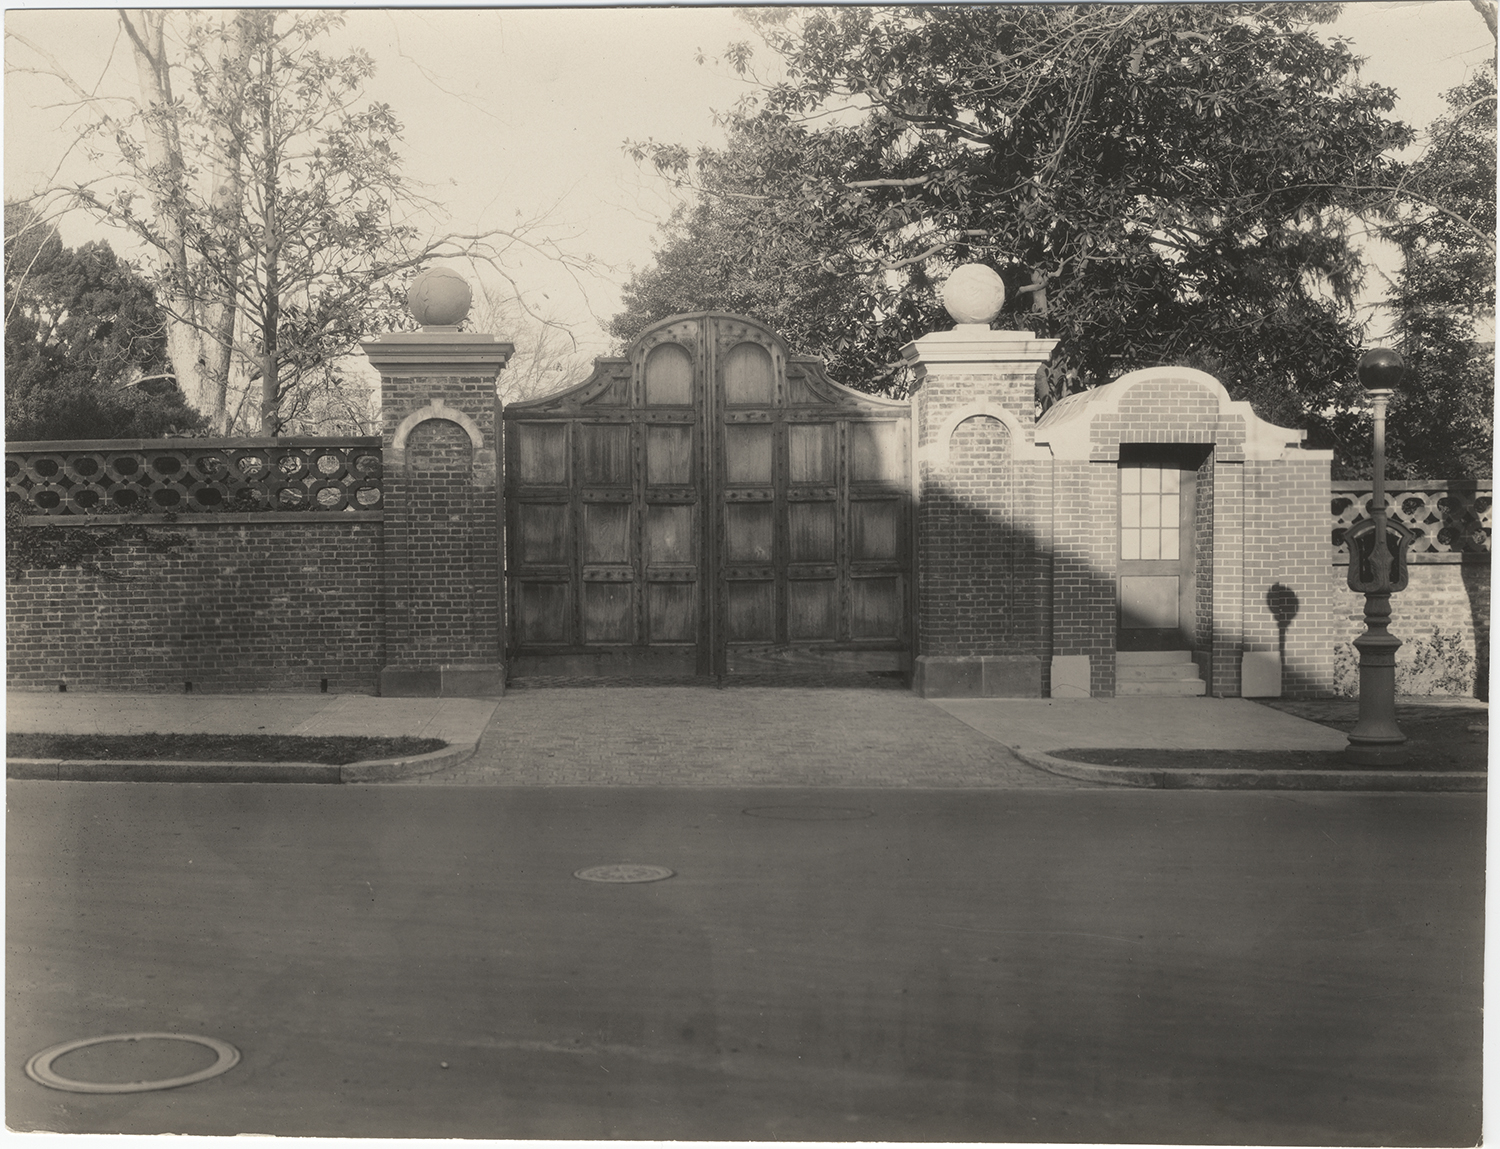 Original gate designed by Beatrix Farrand